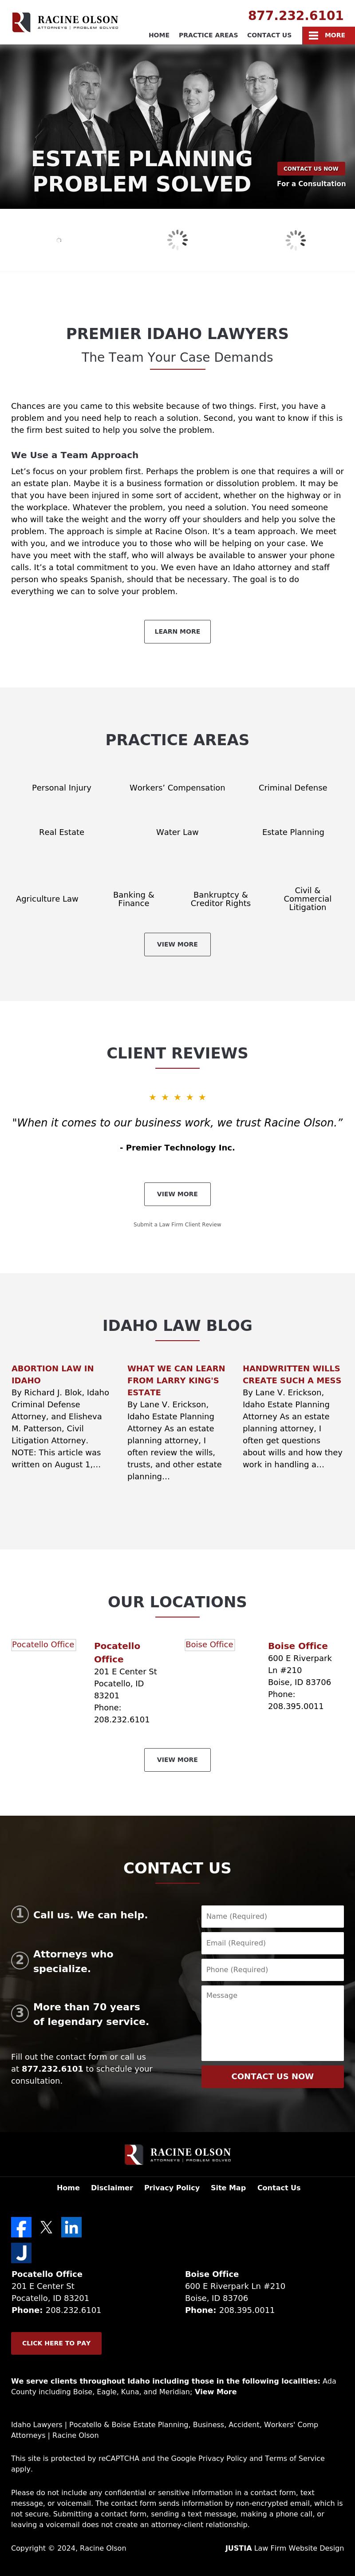 Racine Olson - Boise ID Lawyers